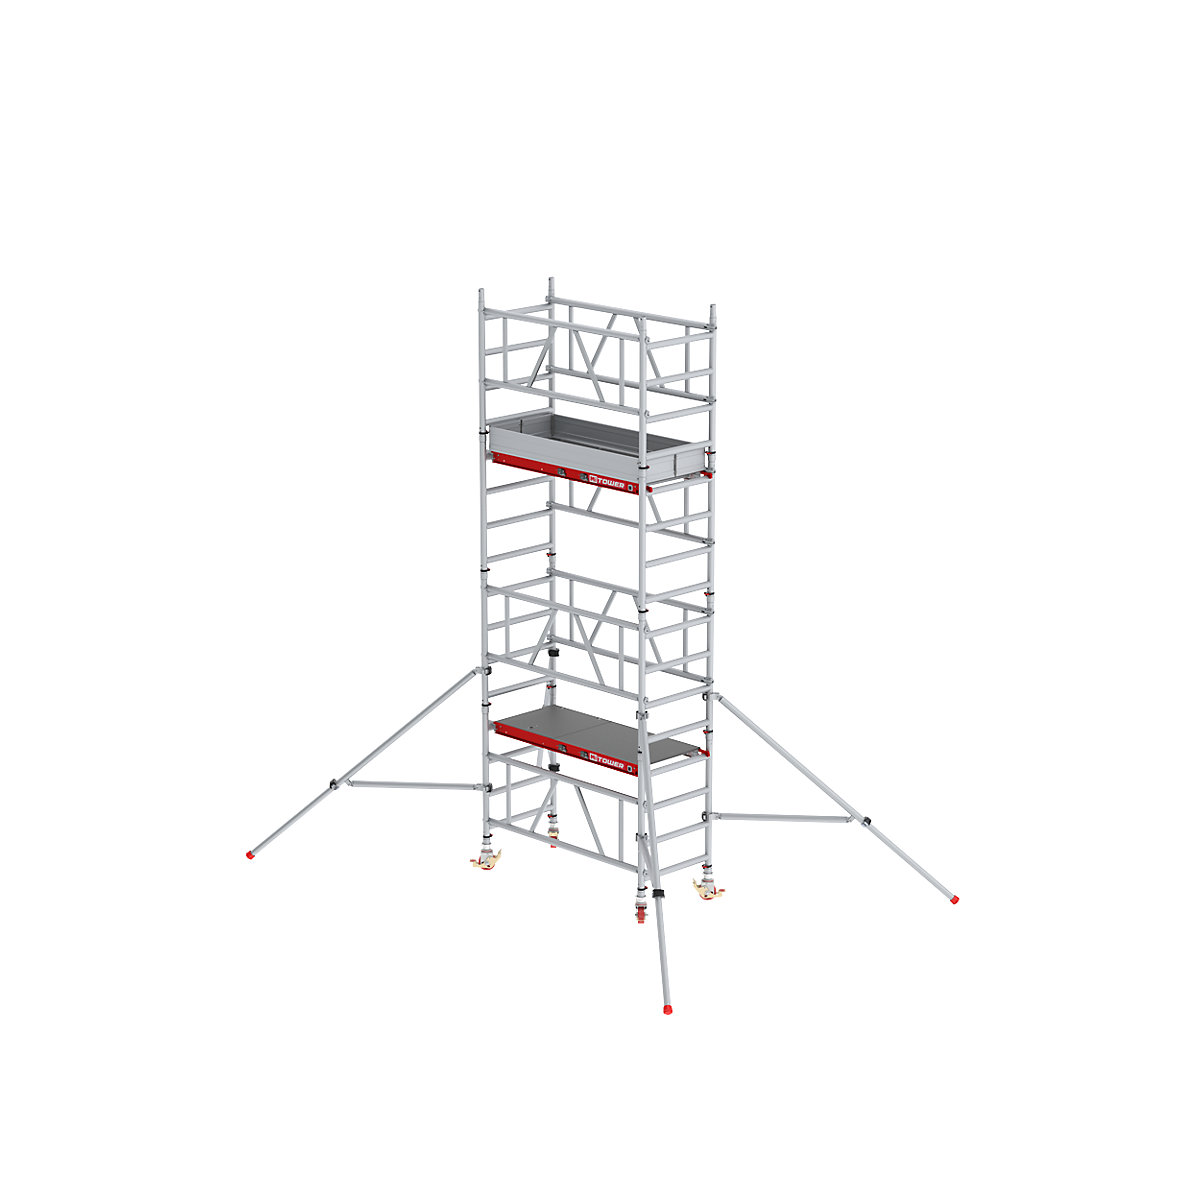 Hitro sestavljiv pomični oder MiTOWER Plus – Altrex, ploščad Fiber-Deck®, delovna višina 5 m